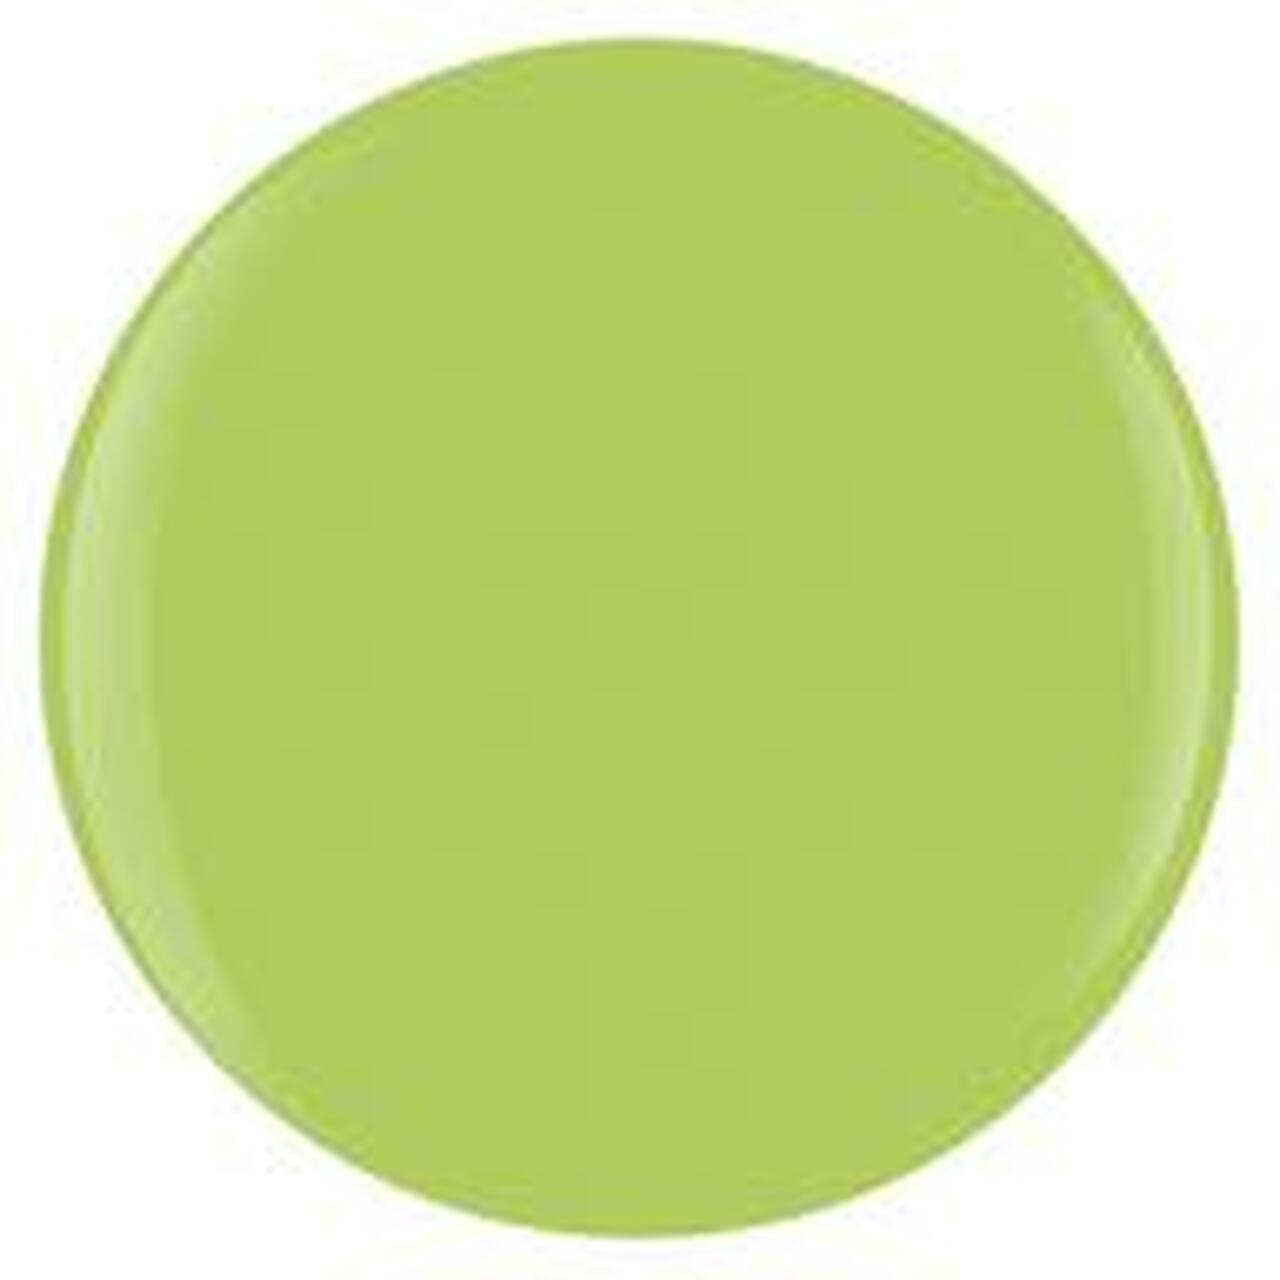 Gelish - Into The Lime-light 0.5oz - Sanida Beauty